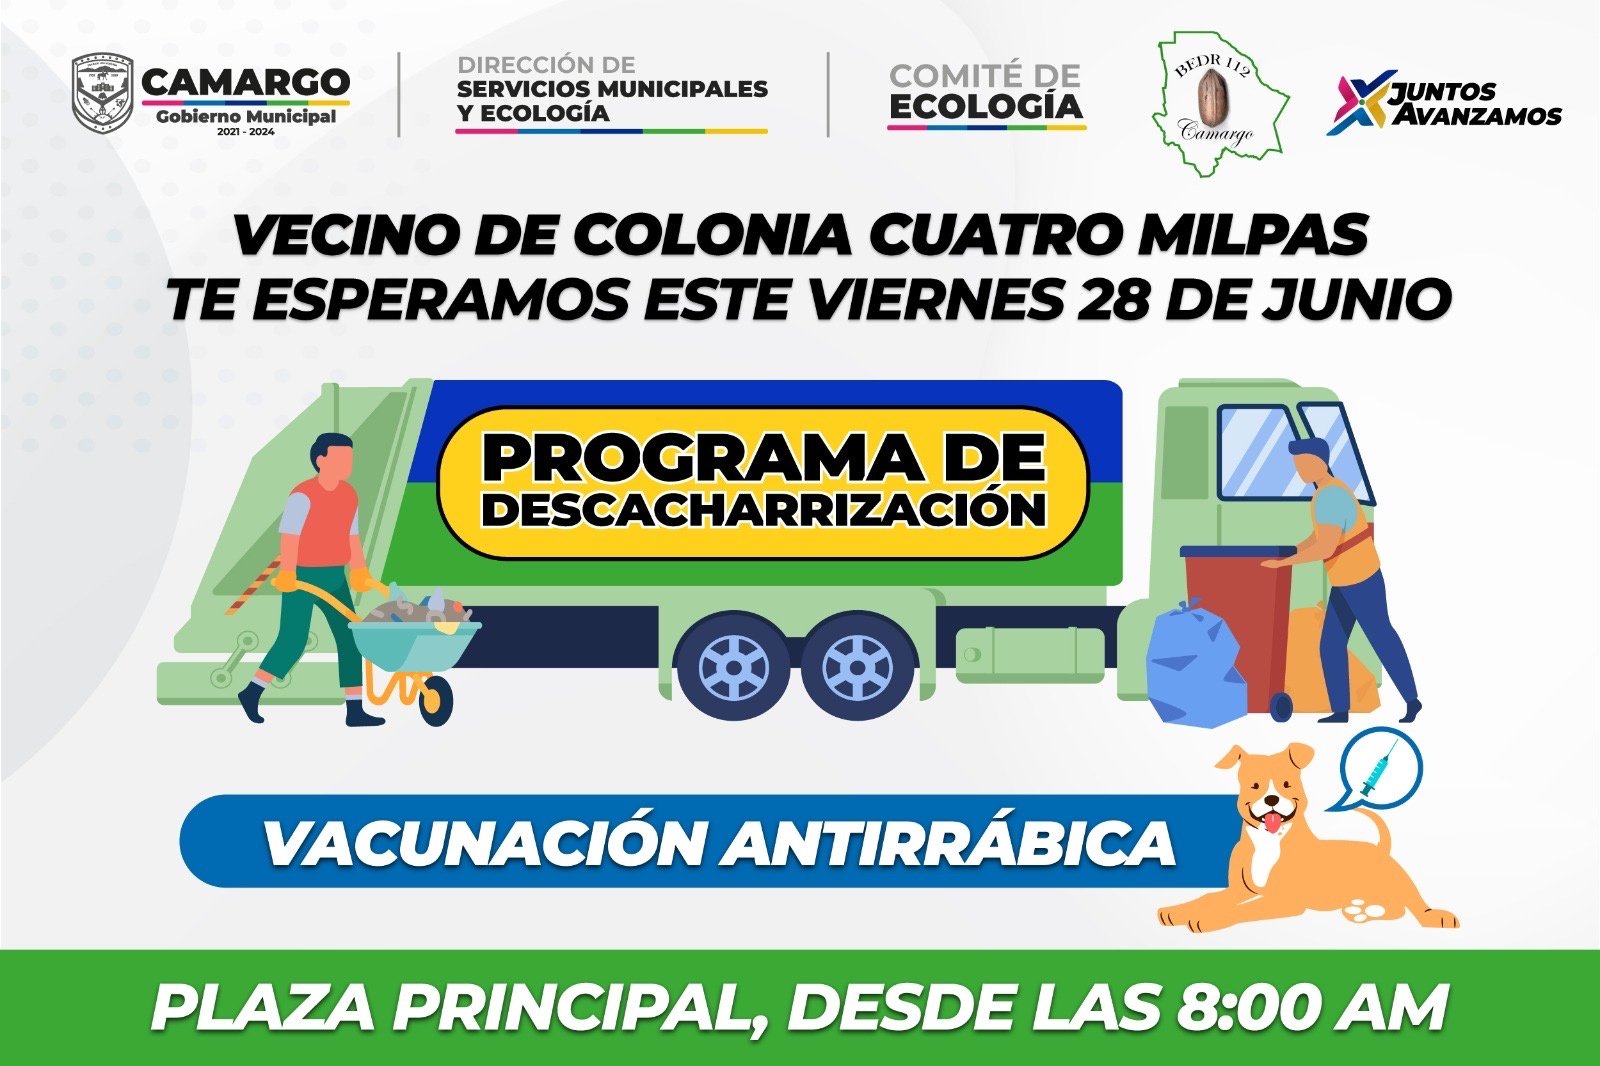 Invitación a la Jornada de Descacharrización y Vacunación Antirrábica en la Colonia Cuatro Milpas